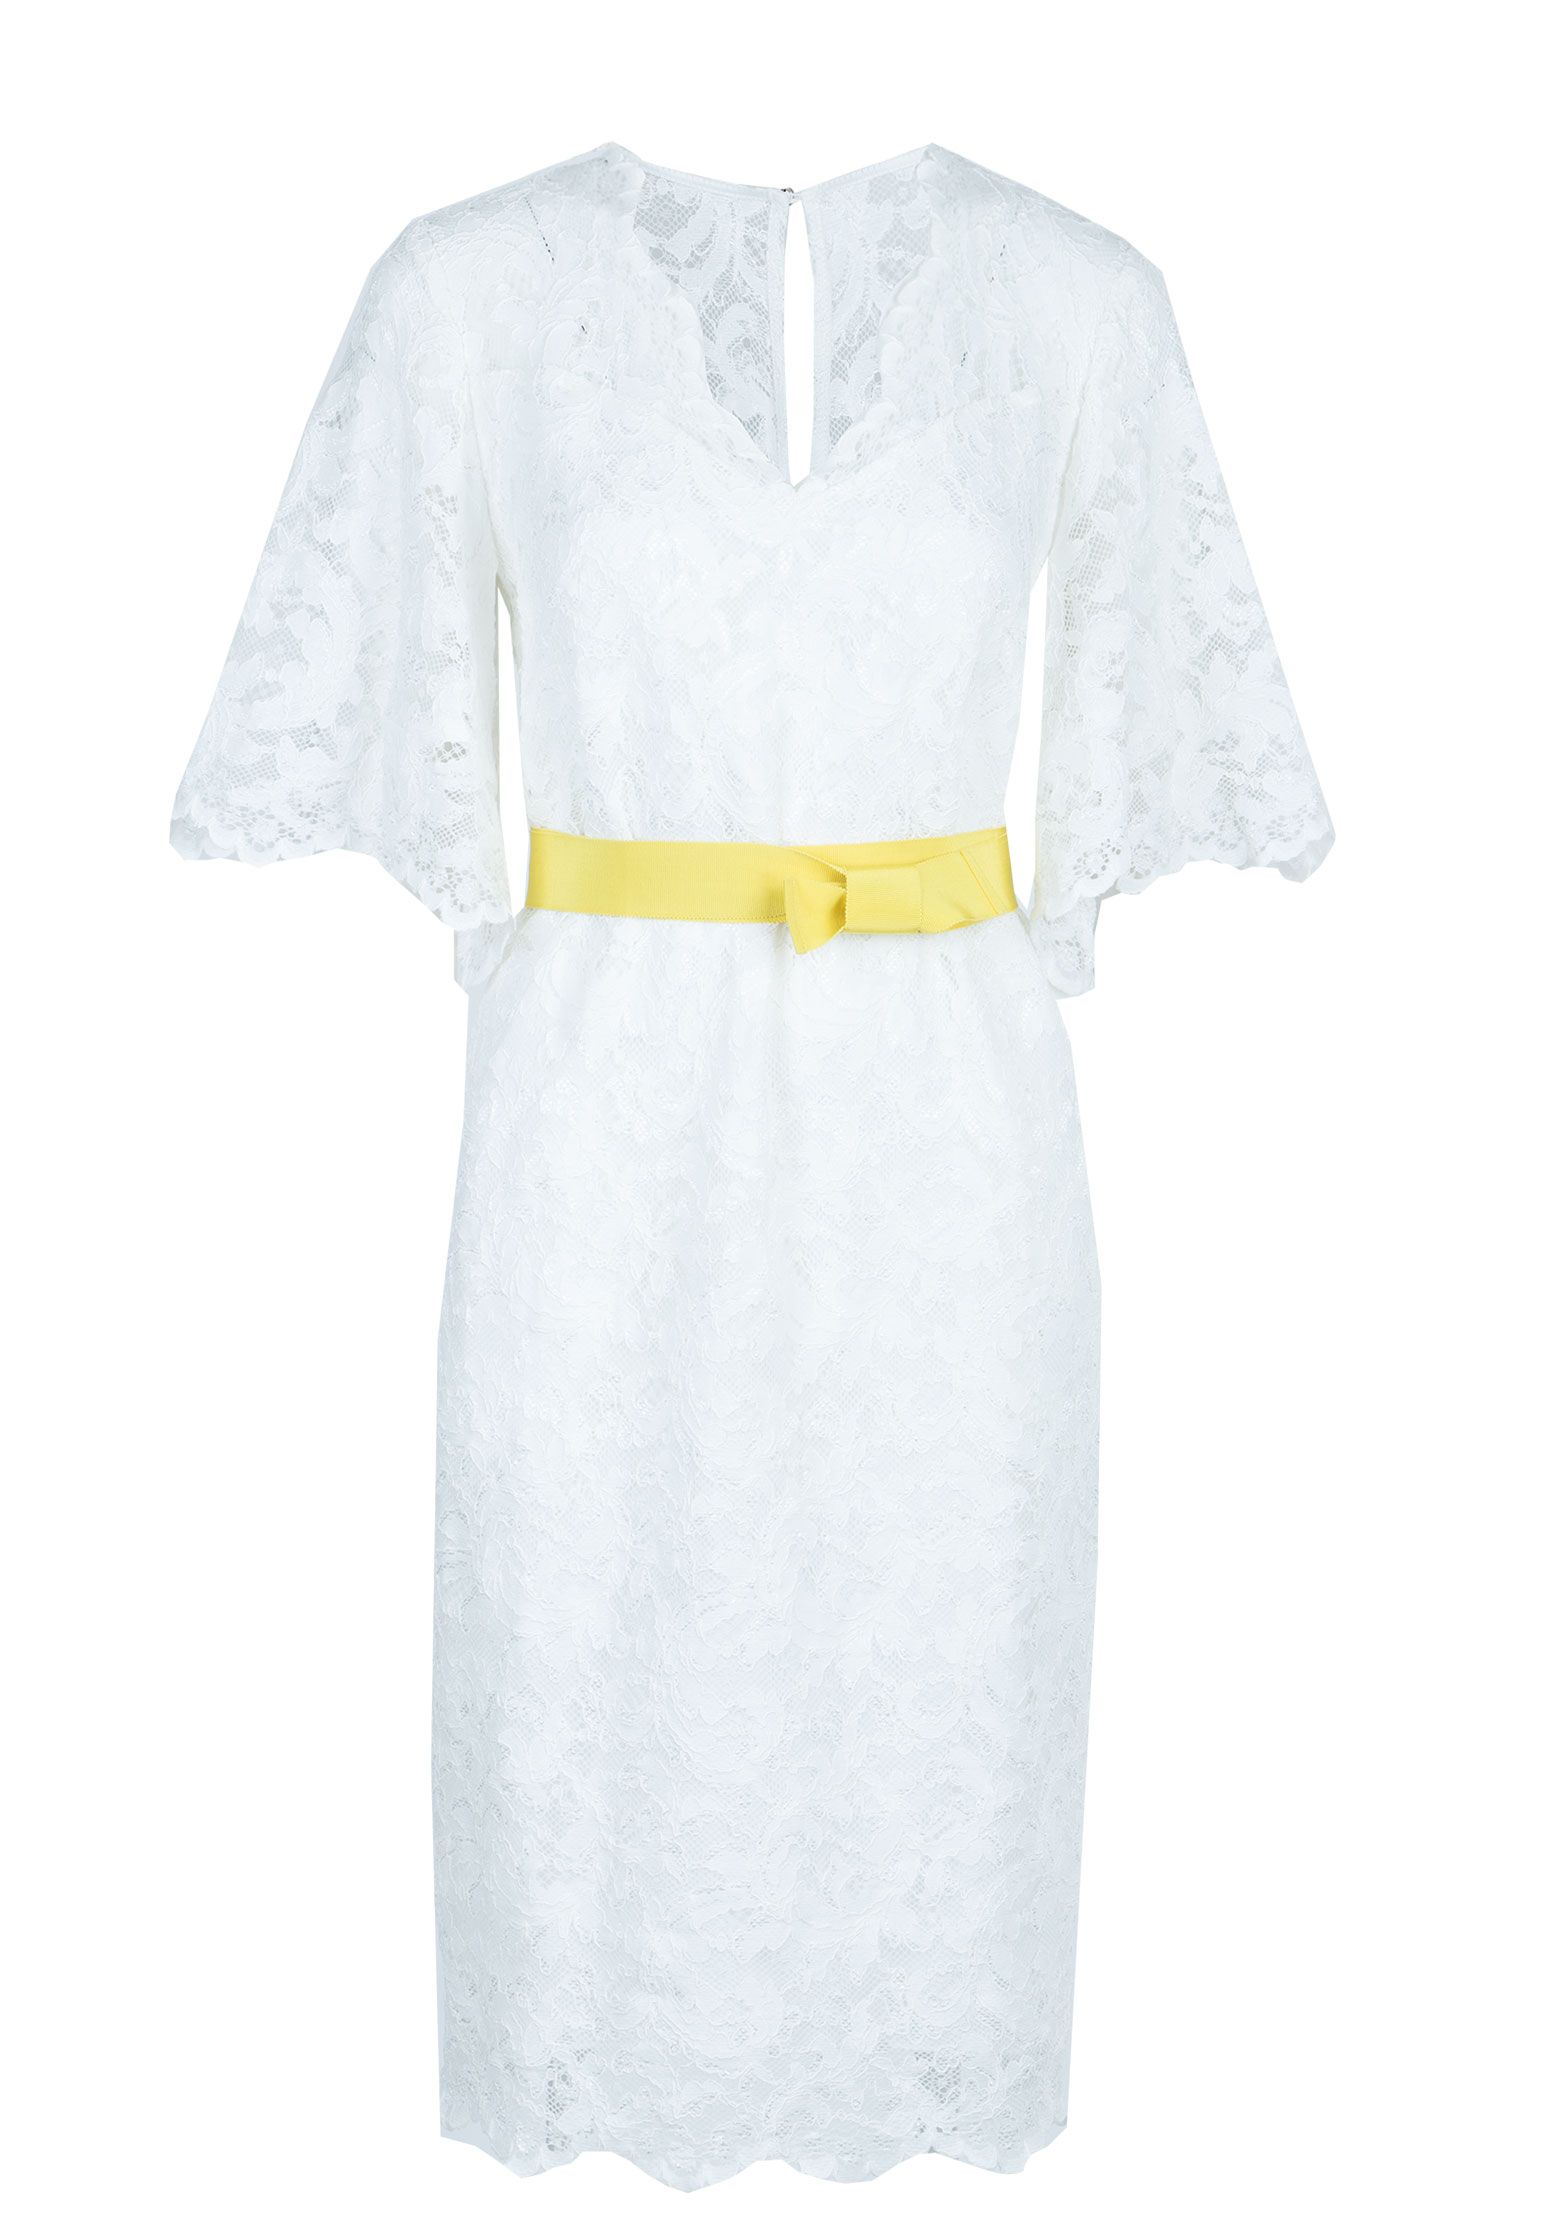 Платье VUALL Белый, размер 46 100471 - фото 1